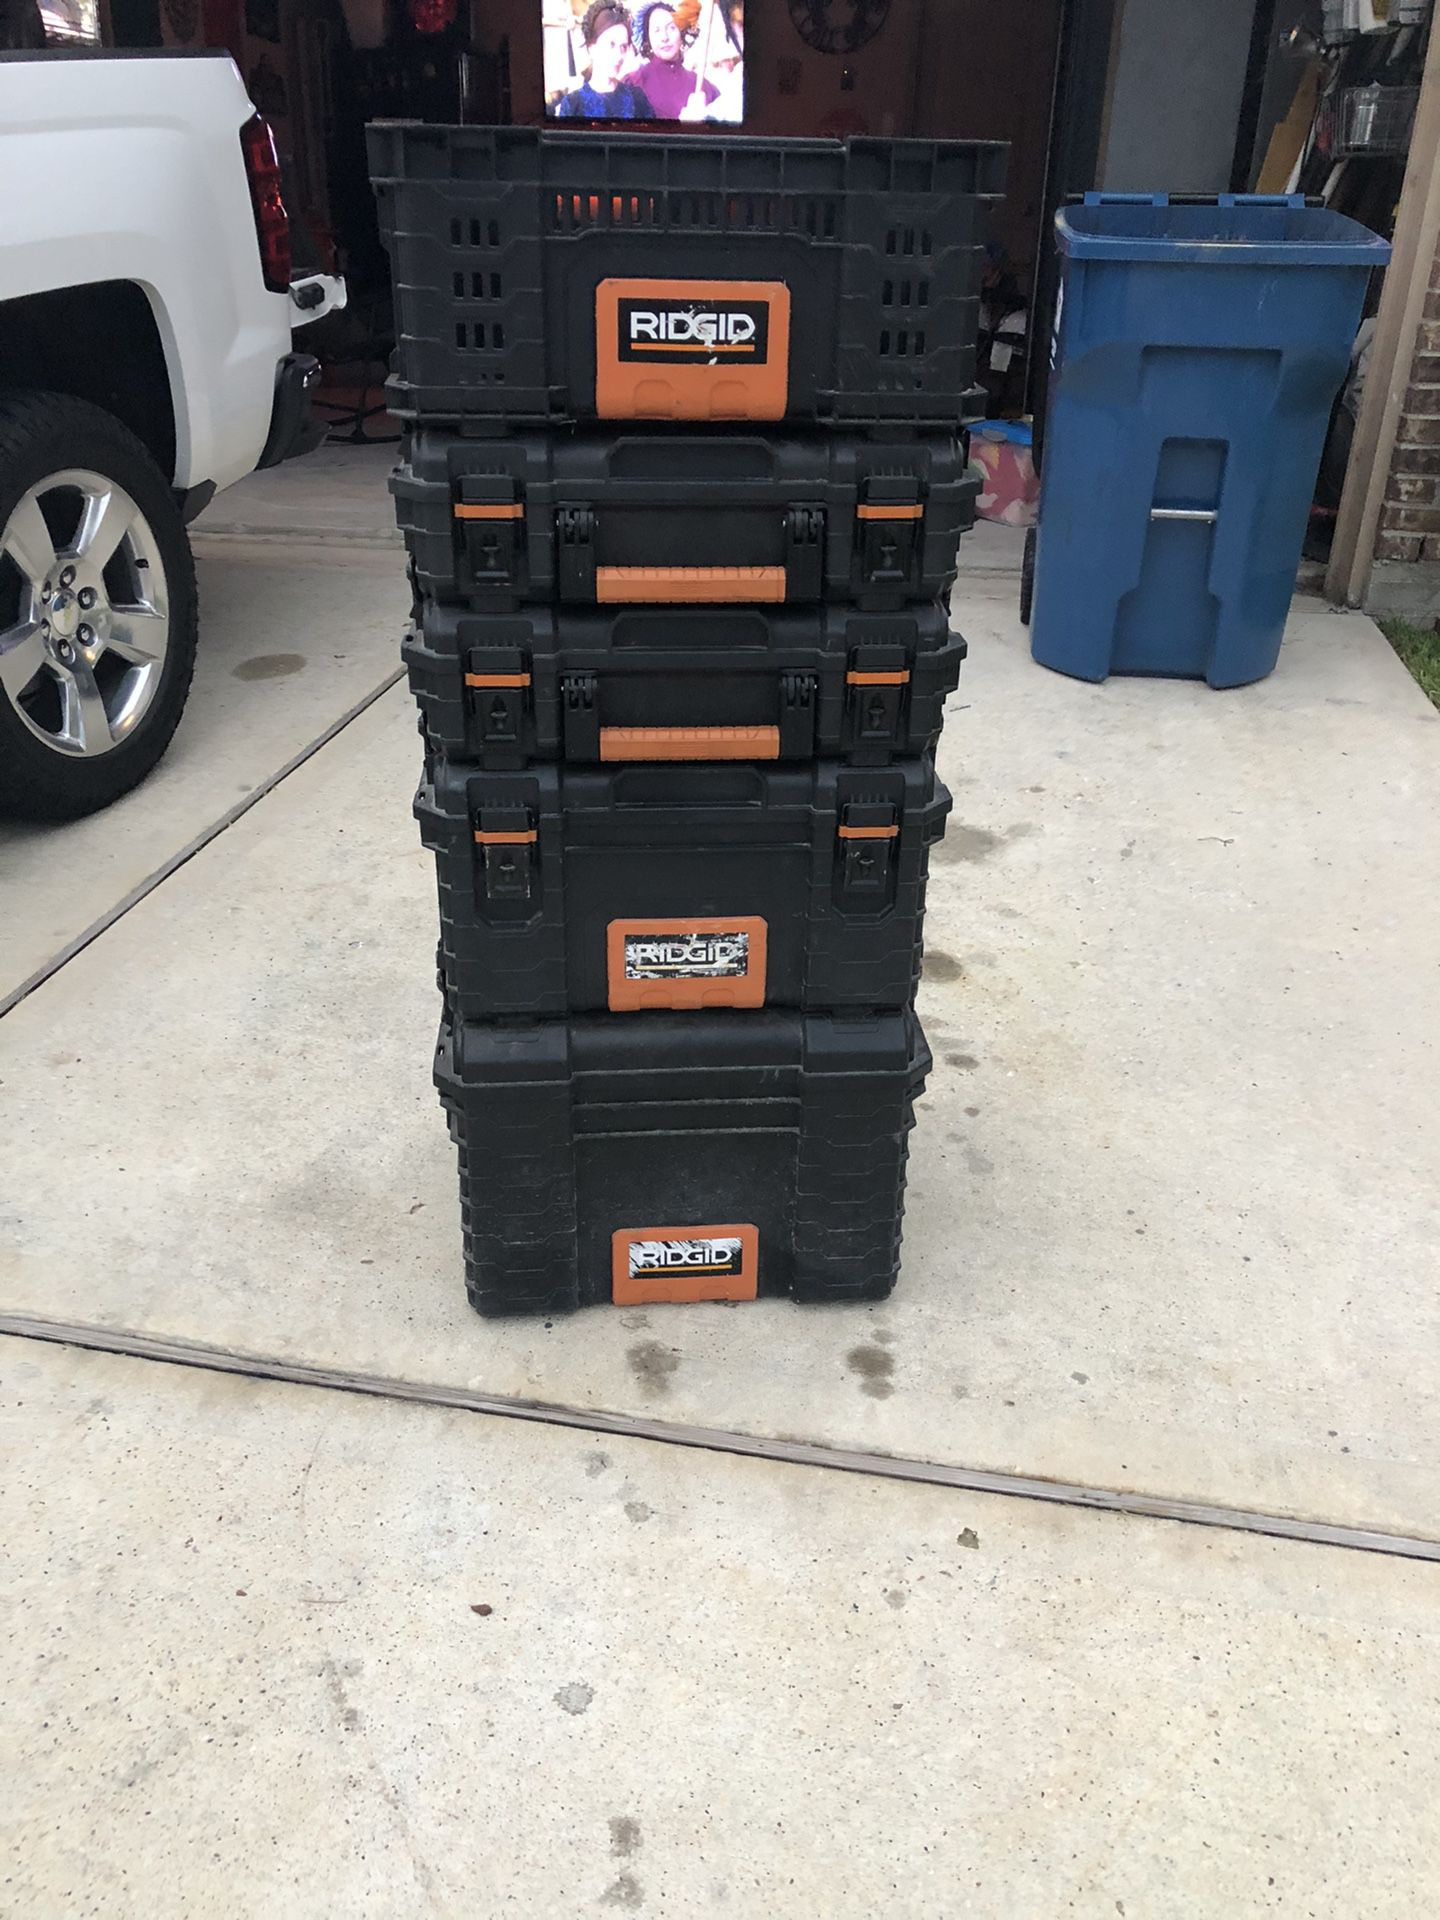 Ridgid tool boxes set of 5